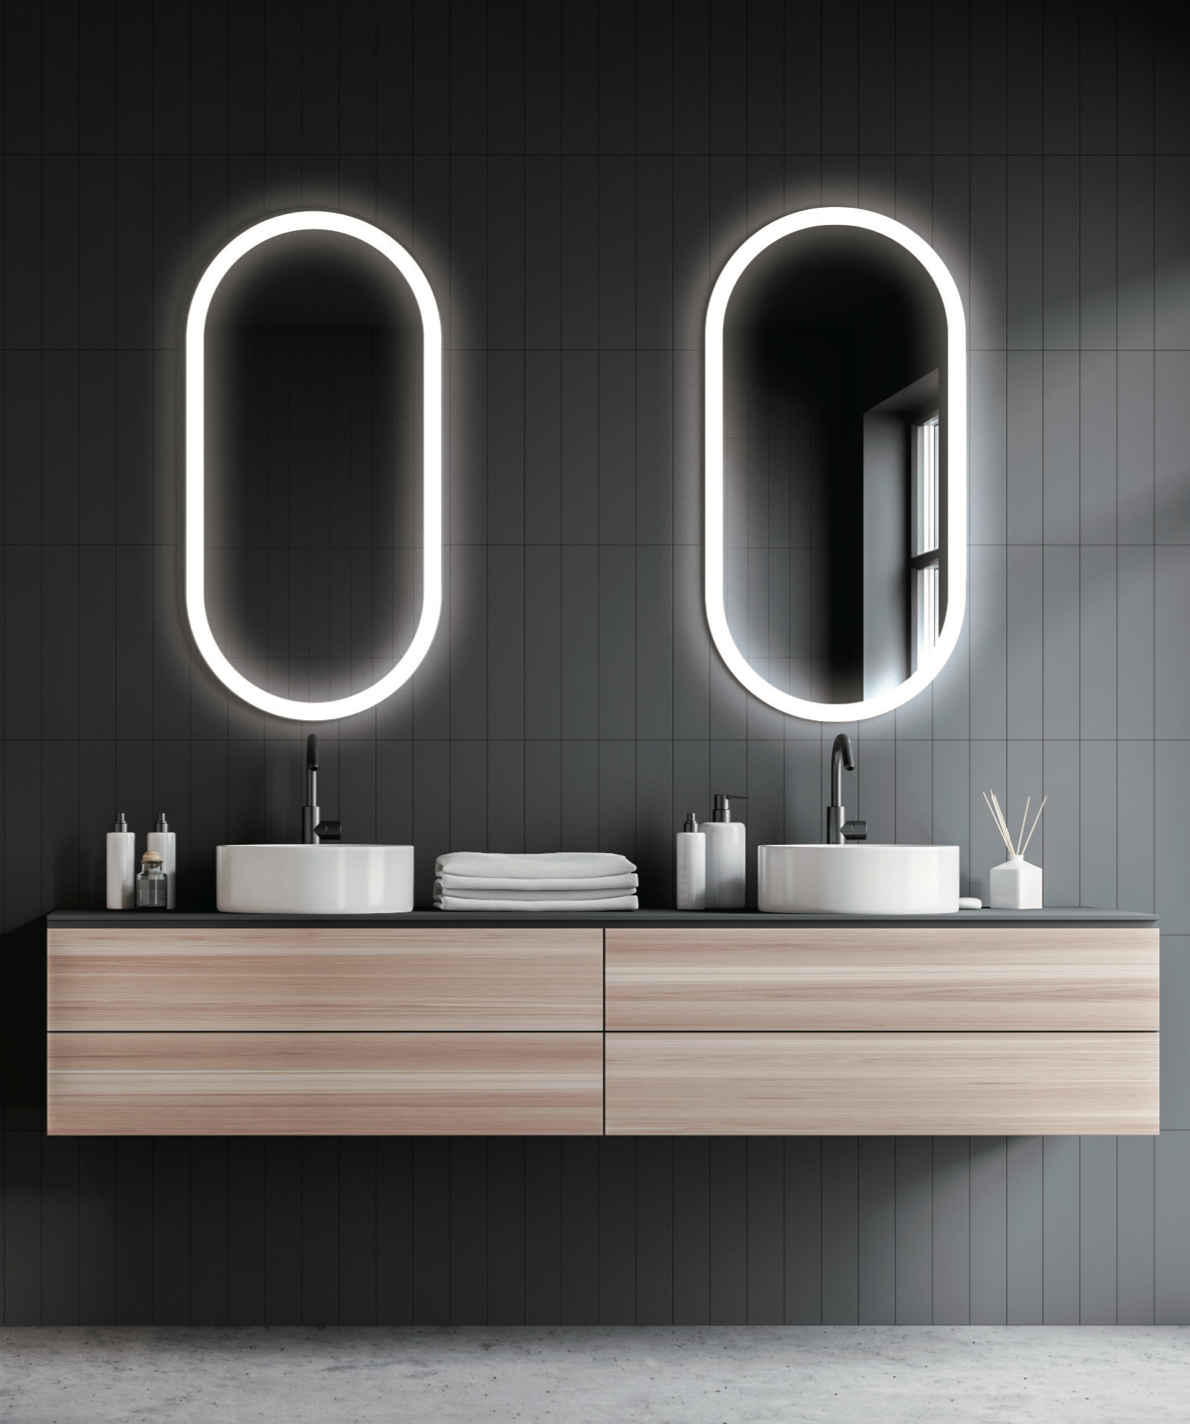 Elliptical bathroom mirror with illuminated frame Canada by Ledimex